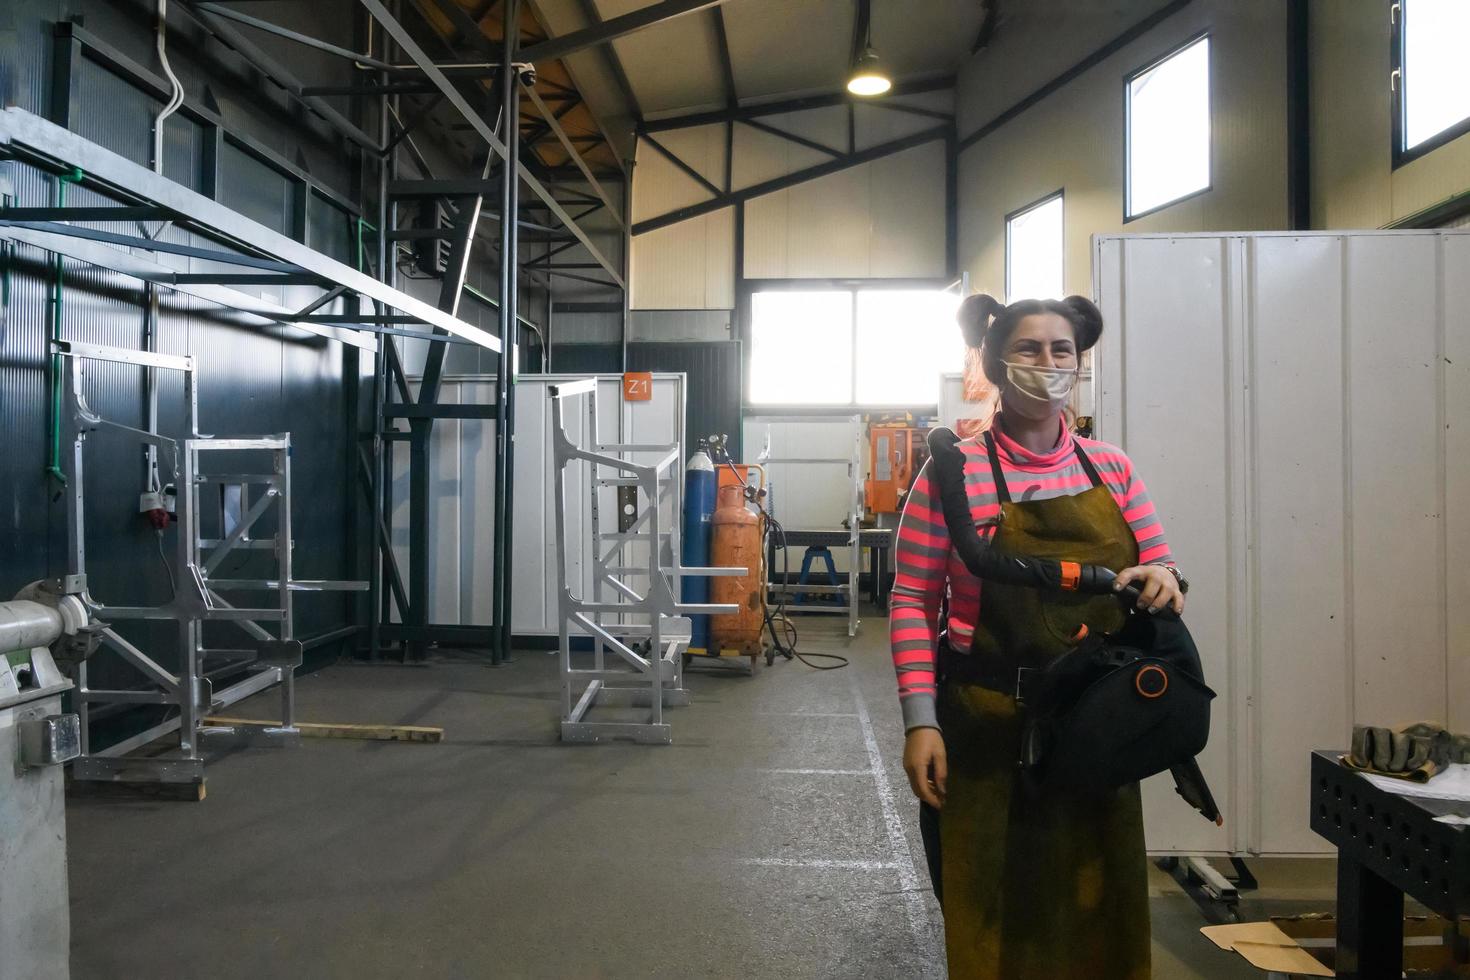 turquía, 2022 - retrato de una mujer soldadora sosteniendo un casco y preparándose para un día de trabajo en la industria del metal foto